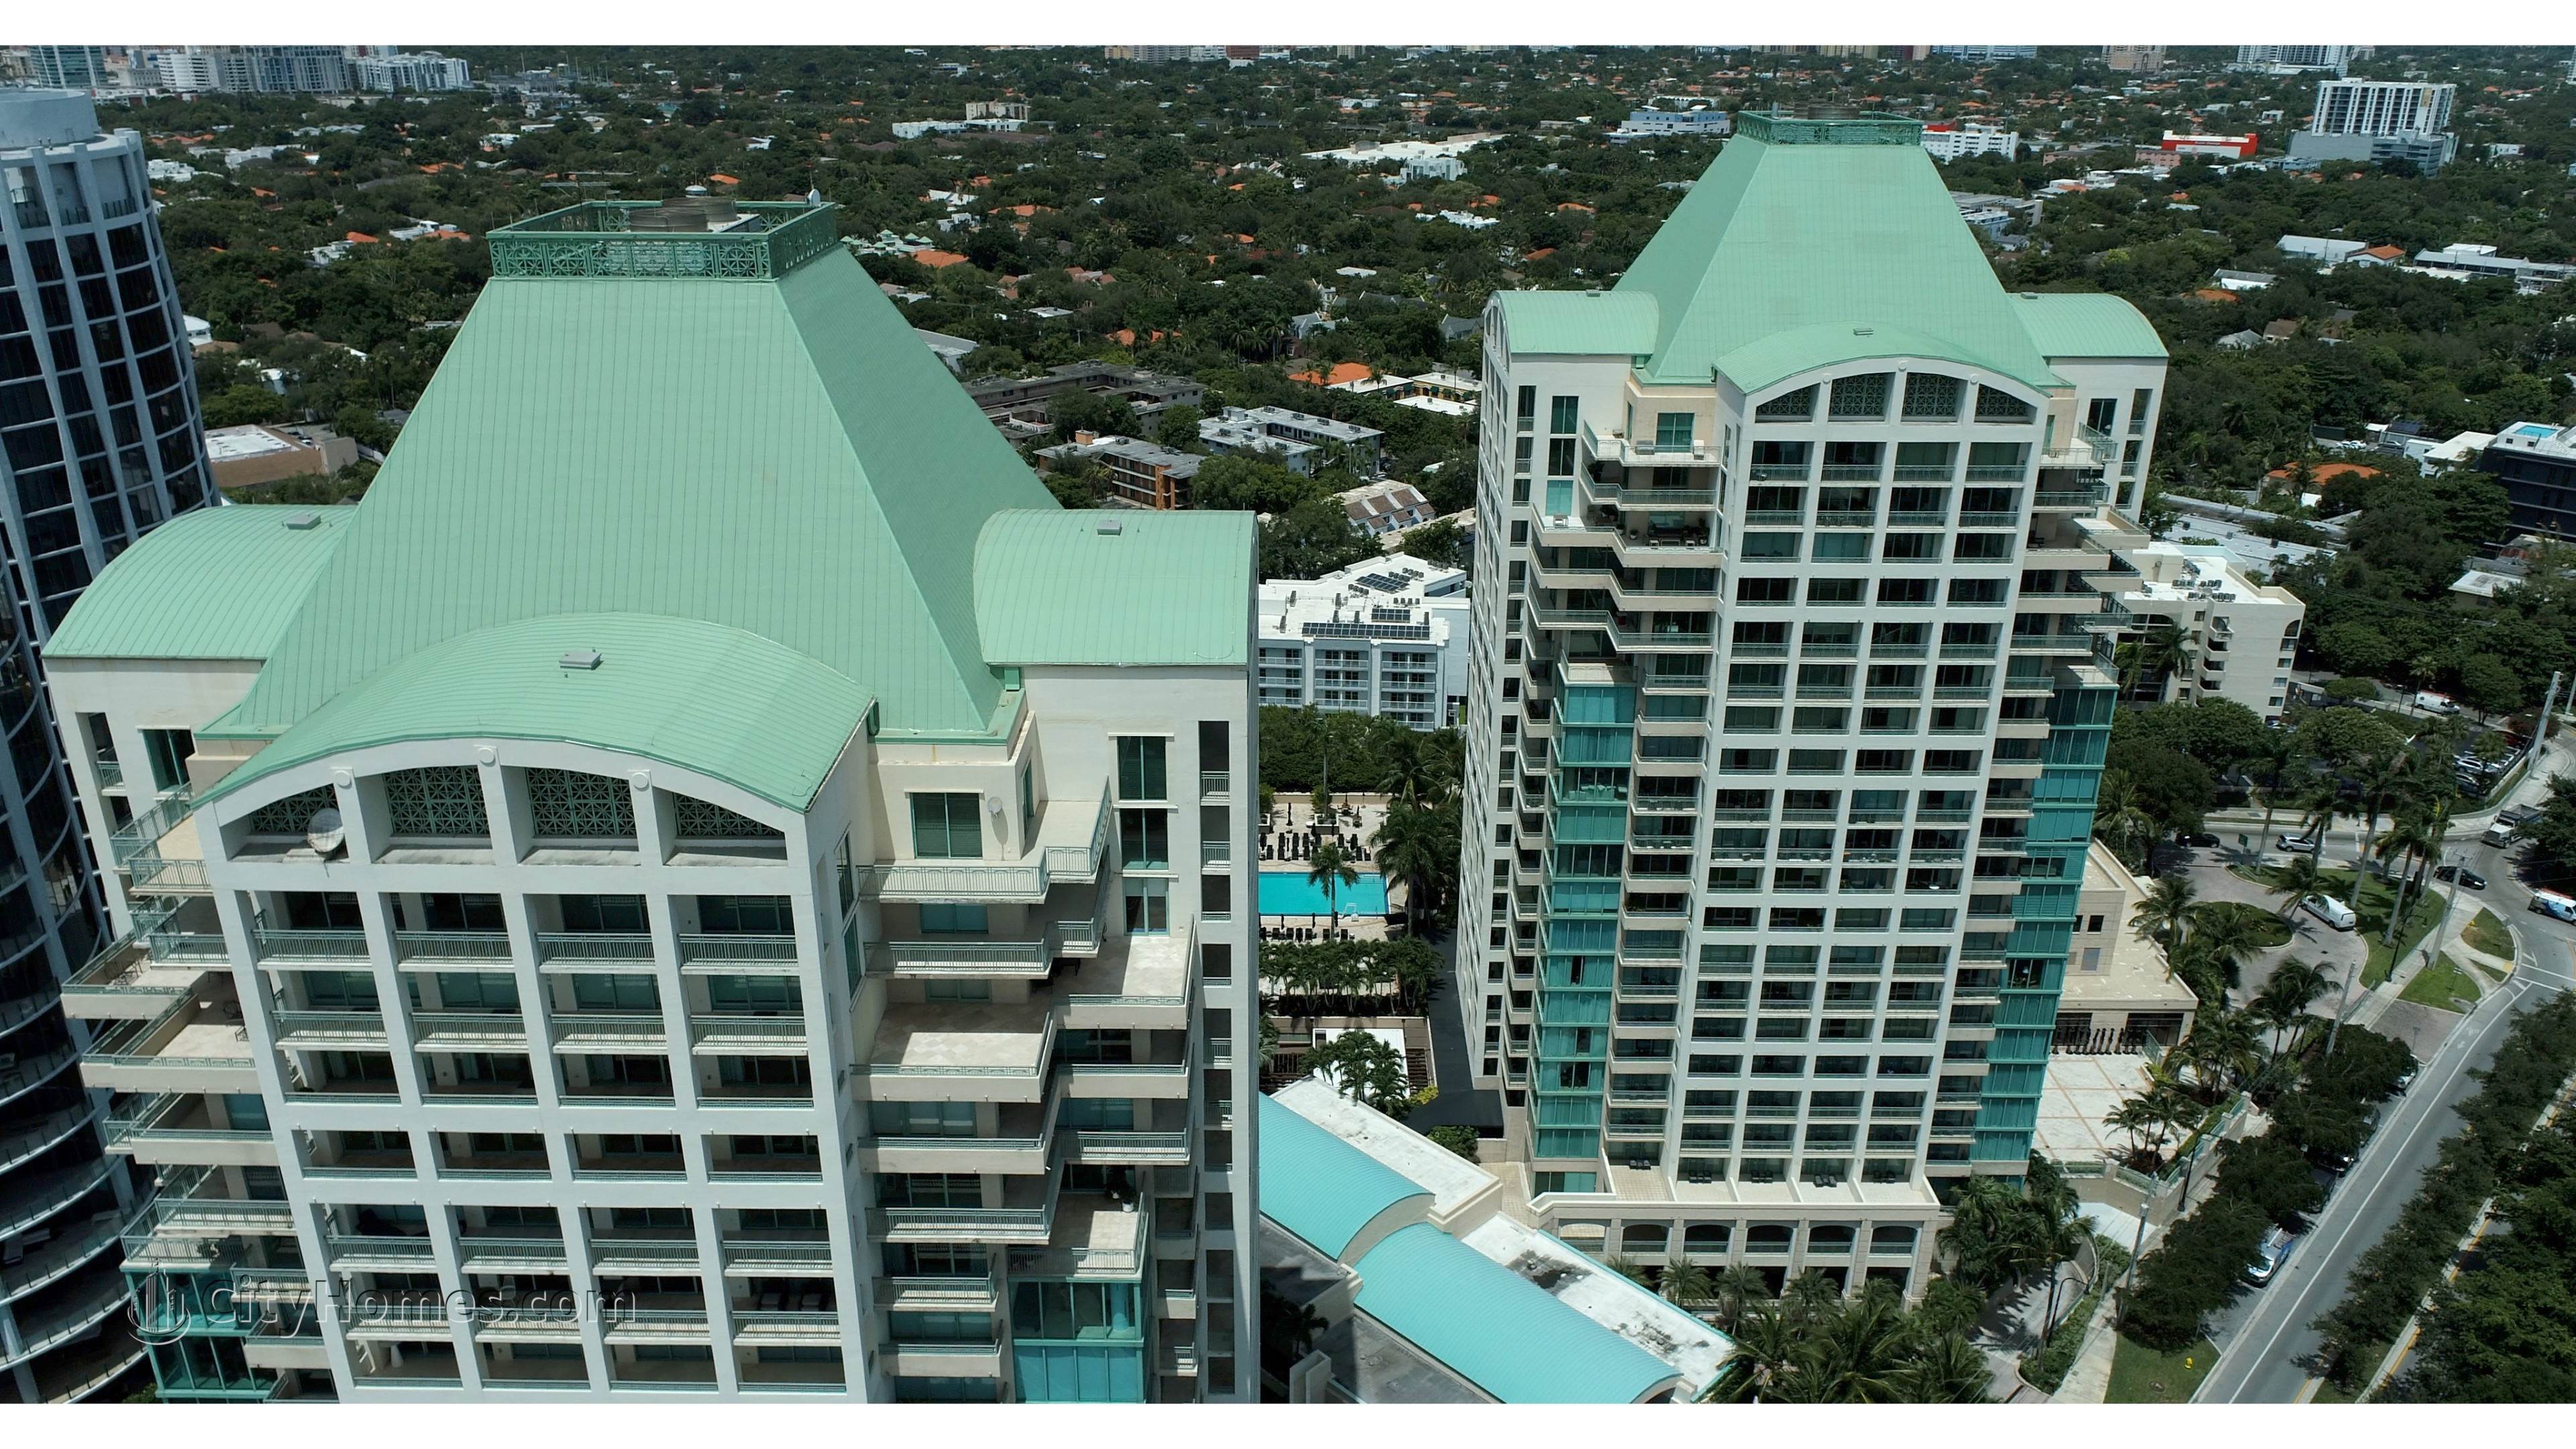 4. Ritz-Carlton Coconut Grove building at 3300 And 3350 SW 27th Avenue, Miami, FL 33133